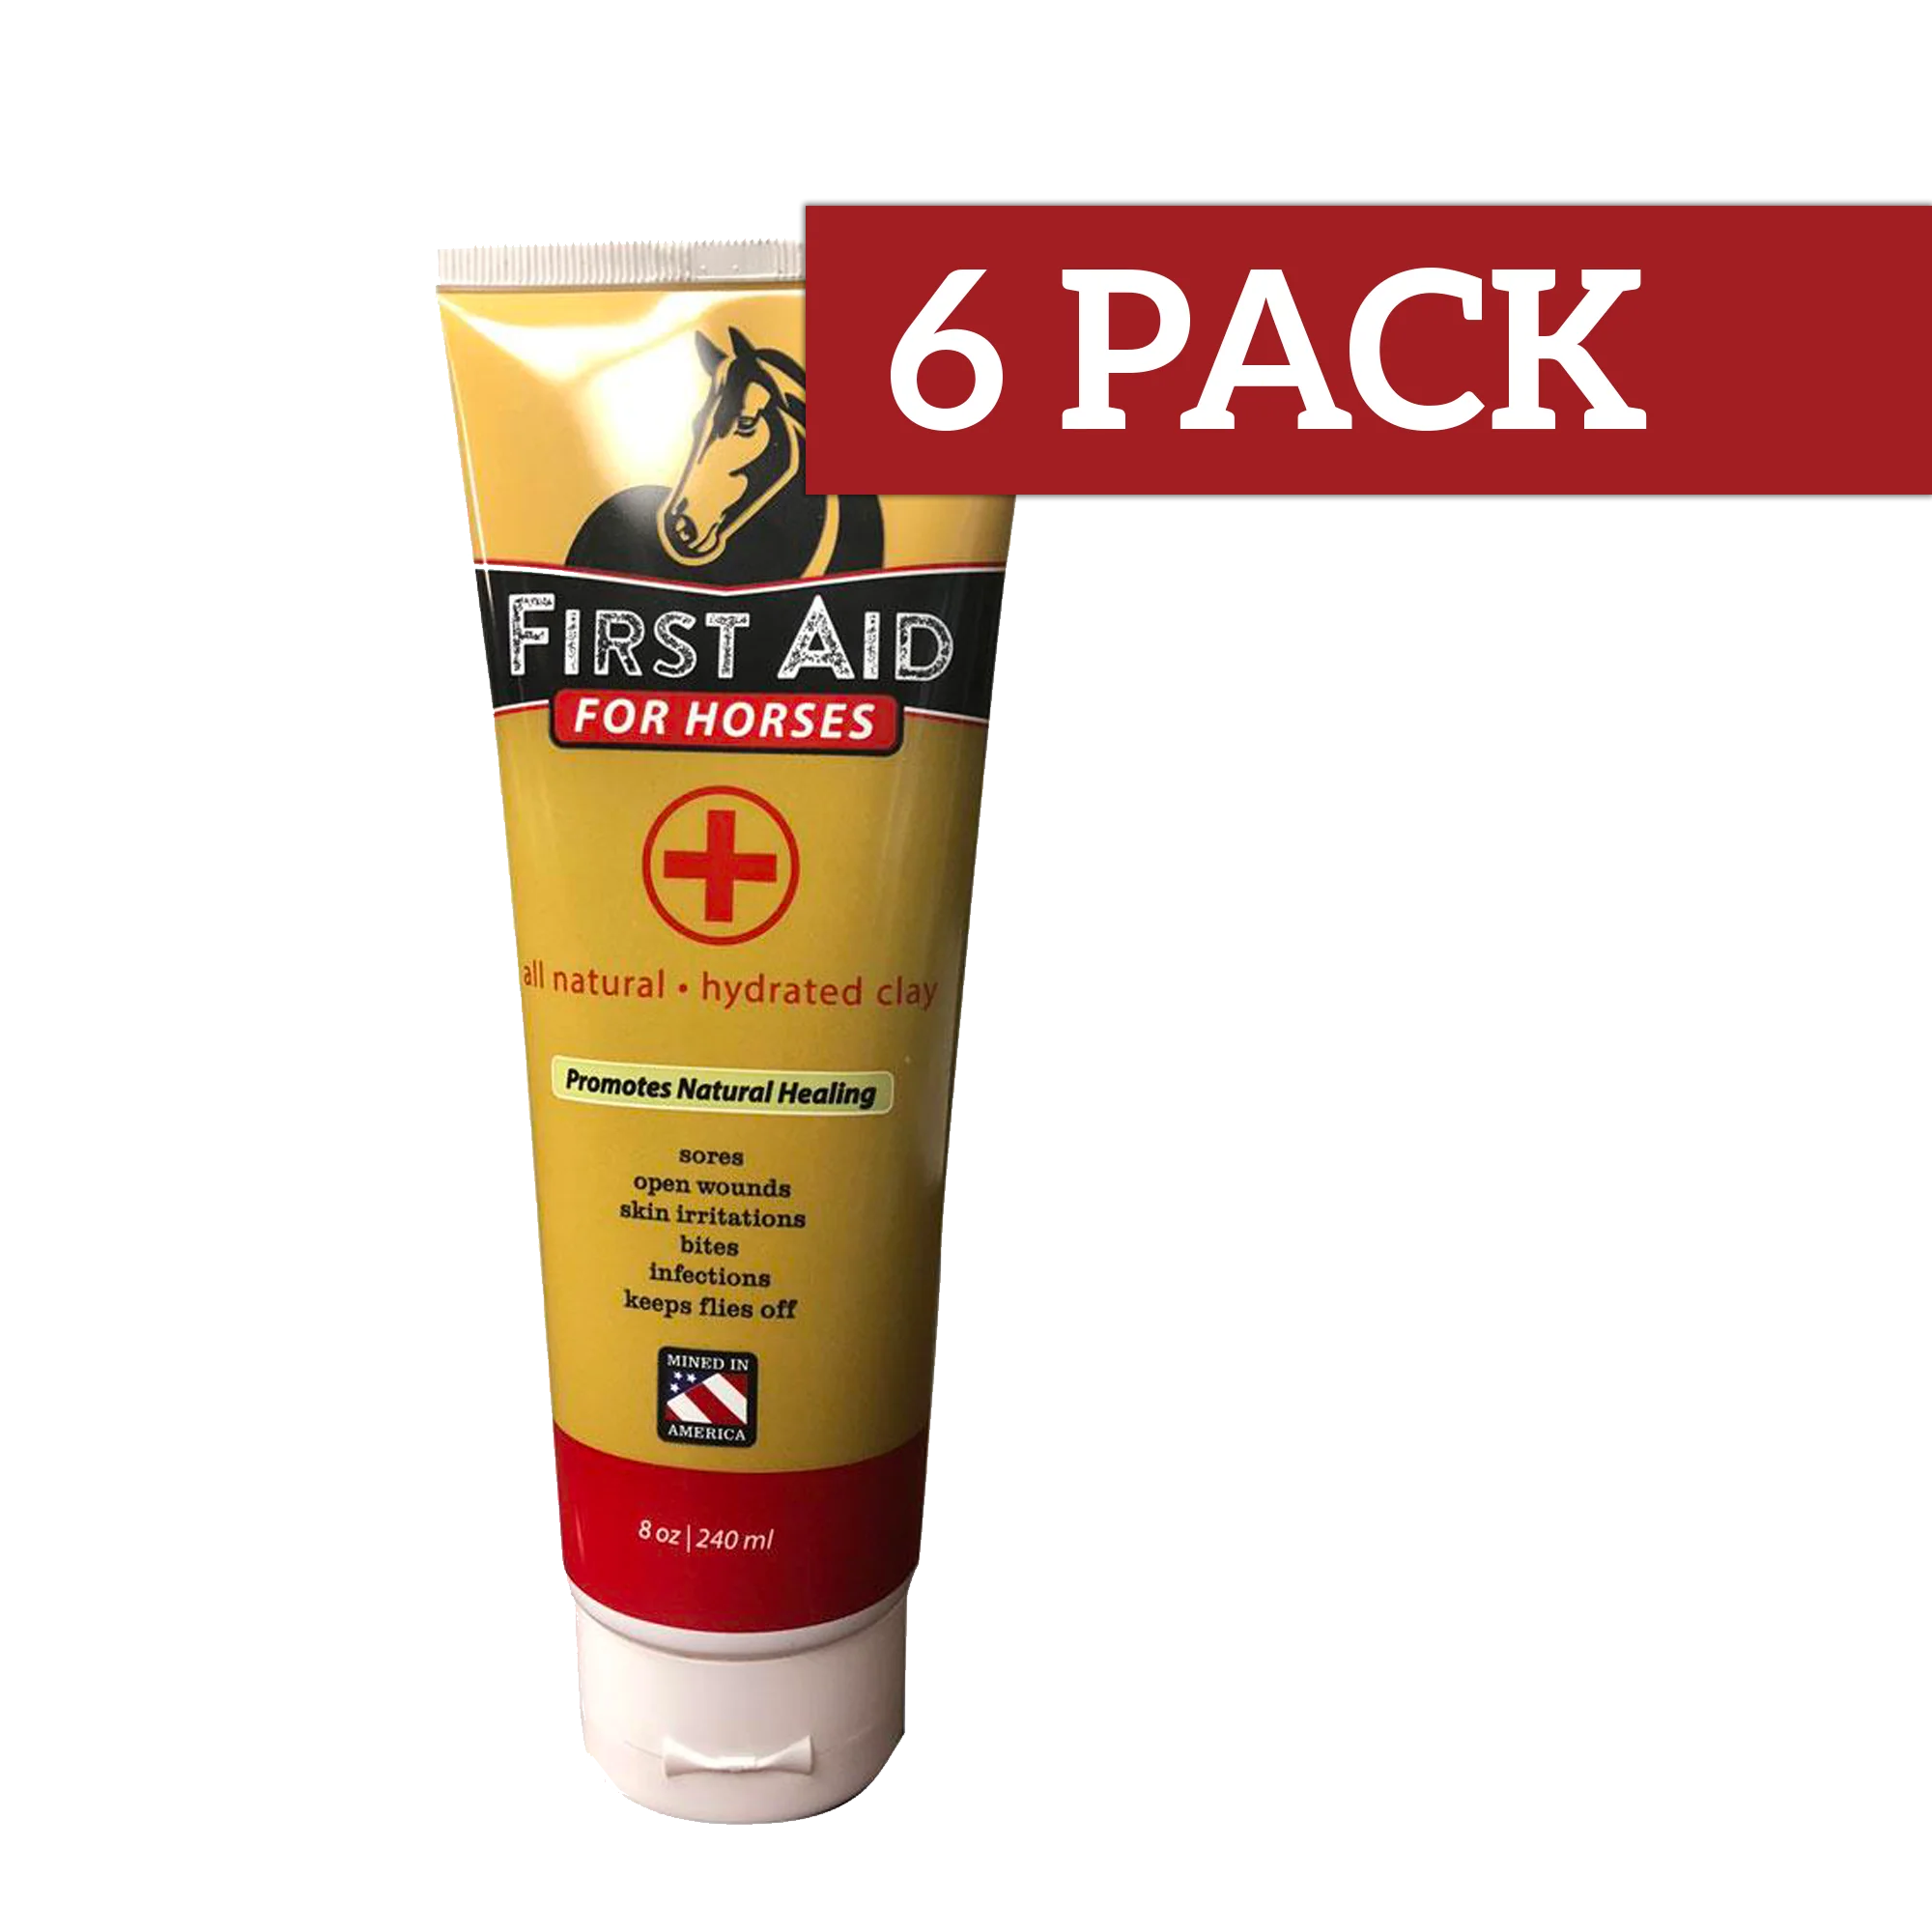 6_pack_first_aid_db510ef3-2ddf-4f38-98f2-5b0e1c033cff_1024x1024@2x